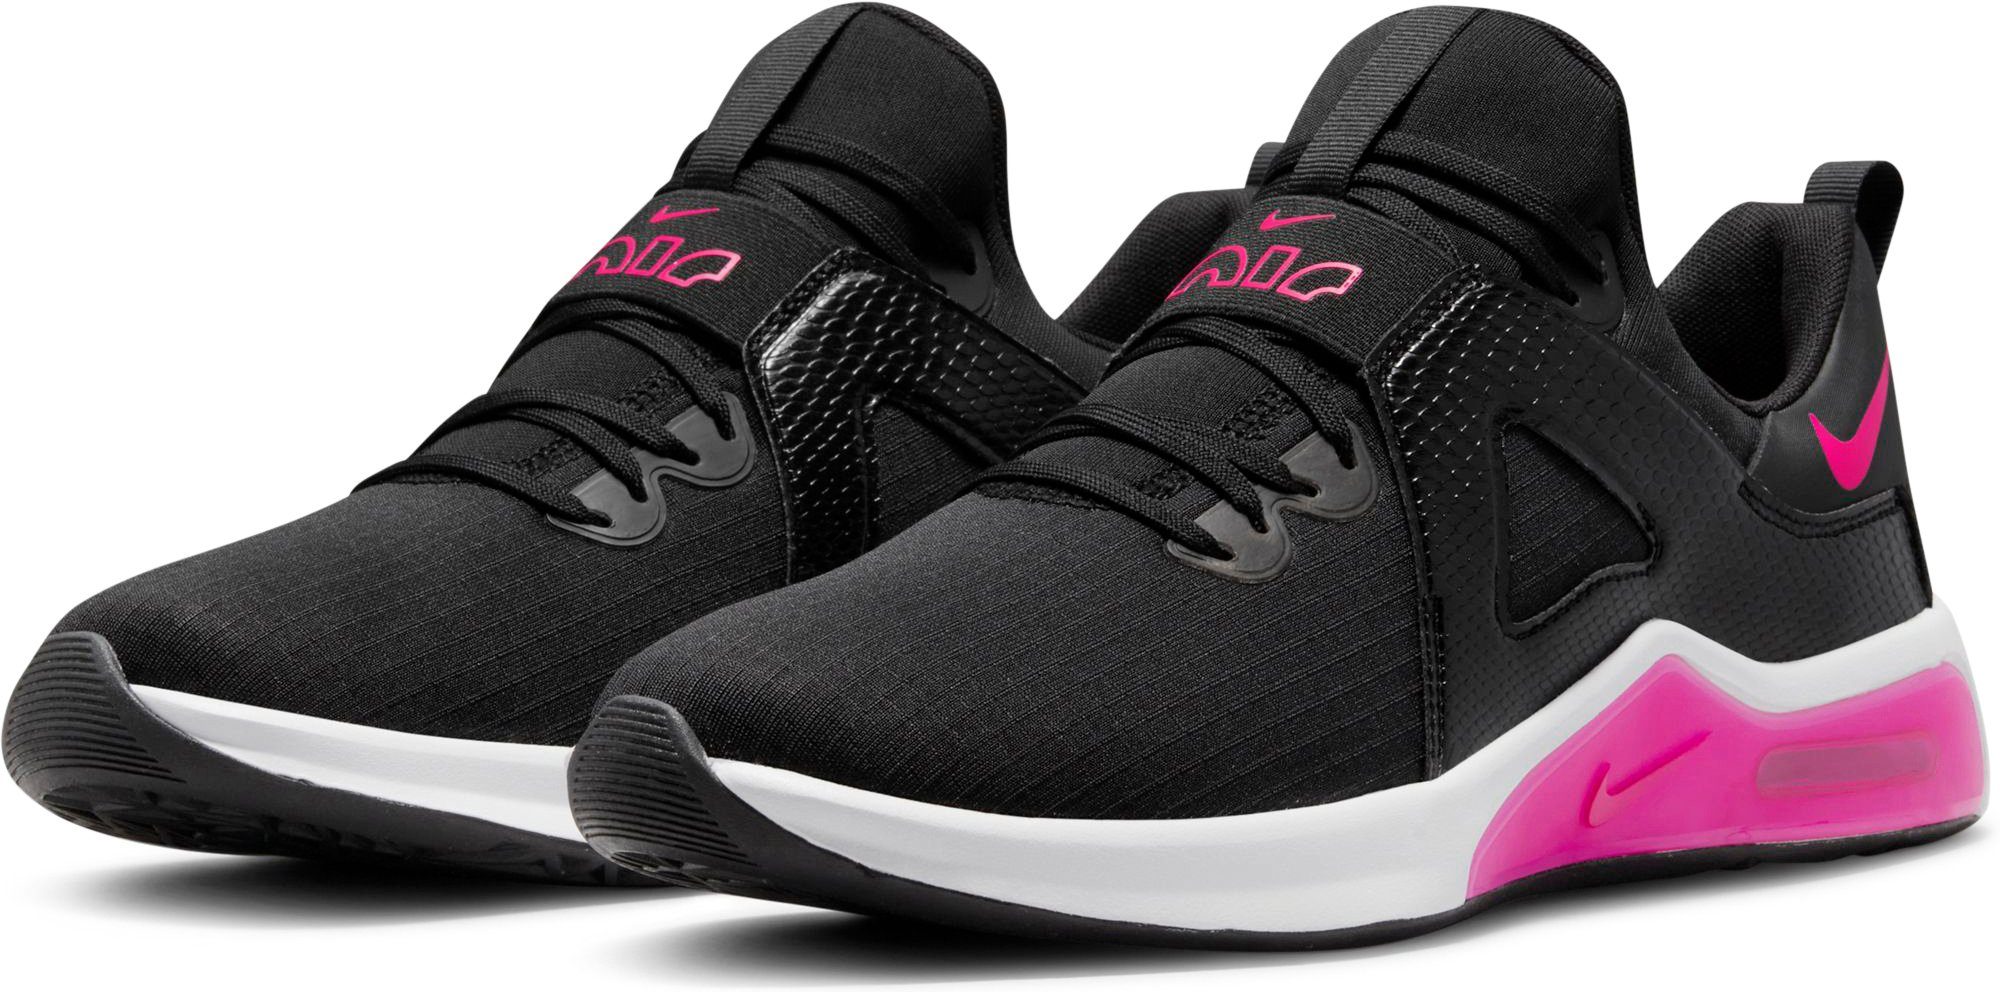 Nike Damenschuhe online kaufen | OTTO